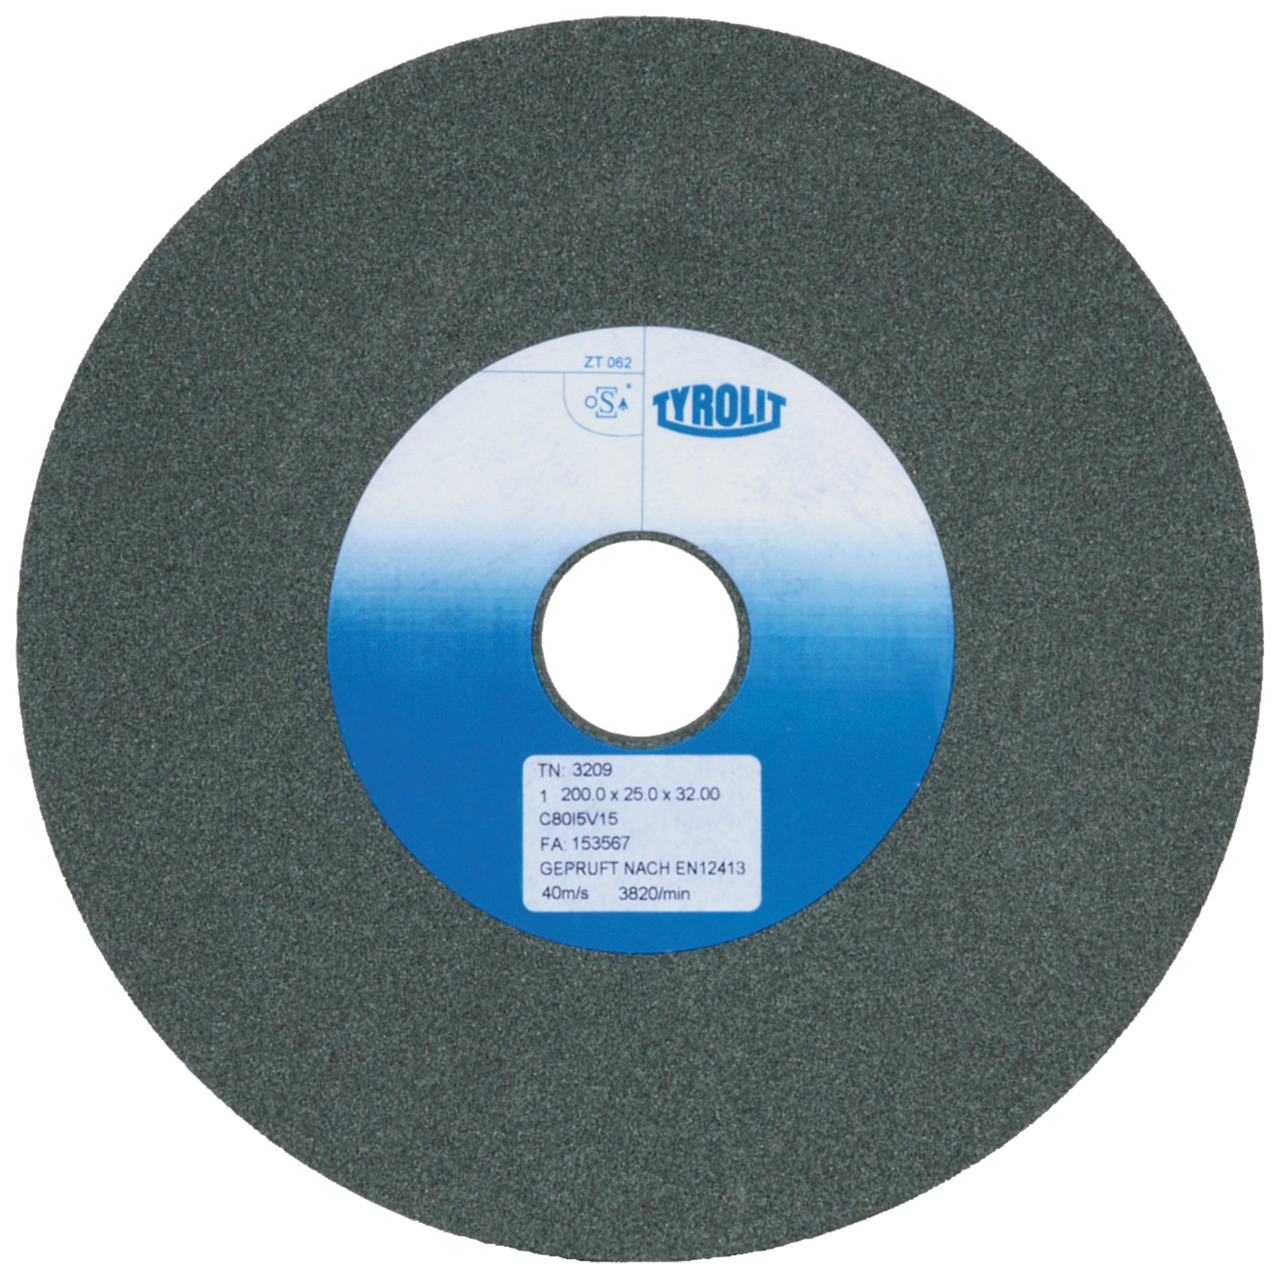 Tyrolit Discos abrasivos cerámicos convencionales DxDxH 150x20x32 Para metal duro y fundición, forma: 1, Art. 861009